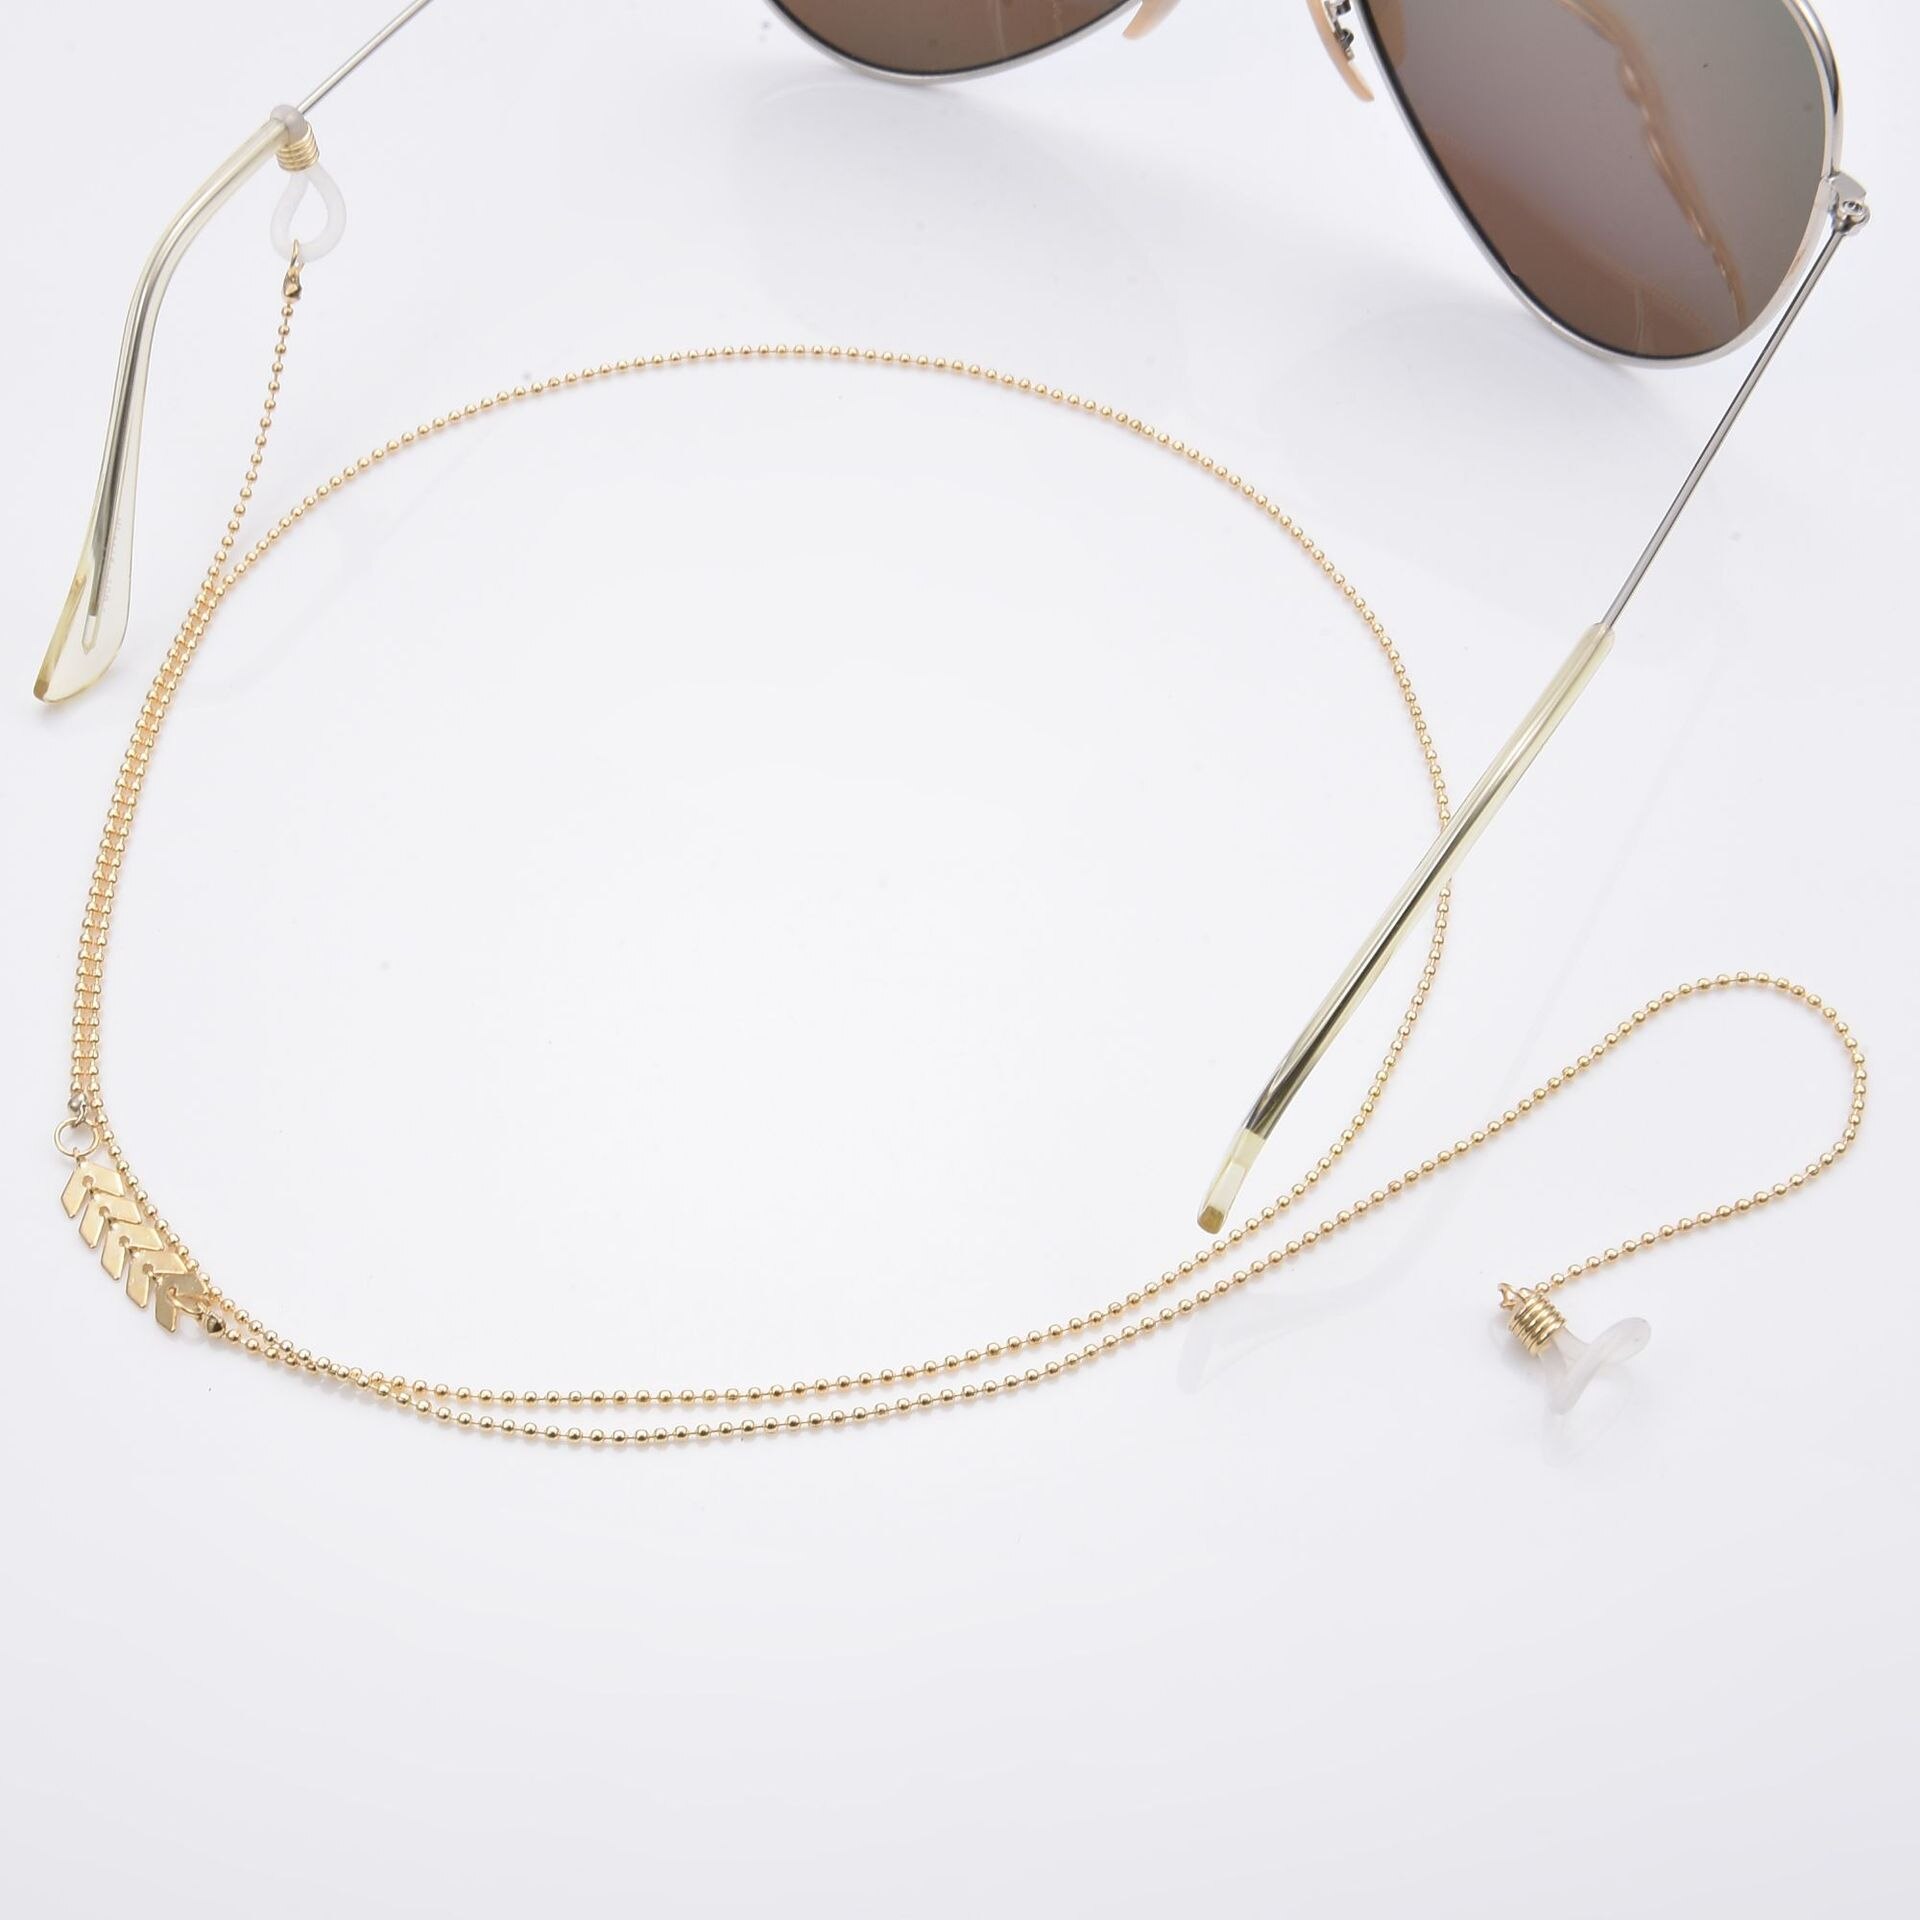 Lunettes chaîne pour femmes avion gland perles lanière lunettes sangle lunettes de soleil cordons décontracté lunettes accessoires DJ-167